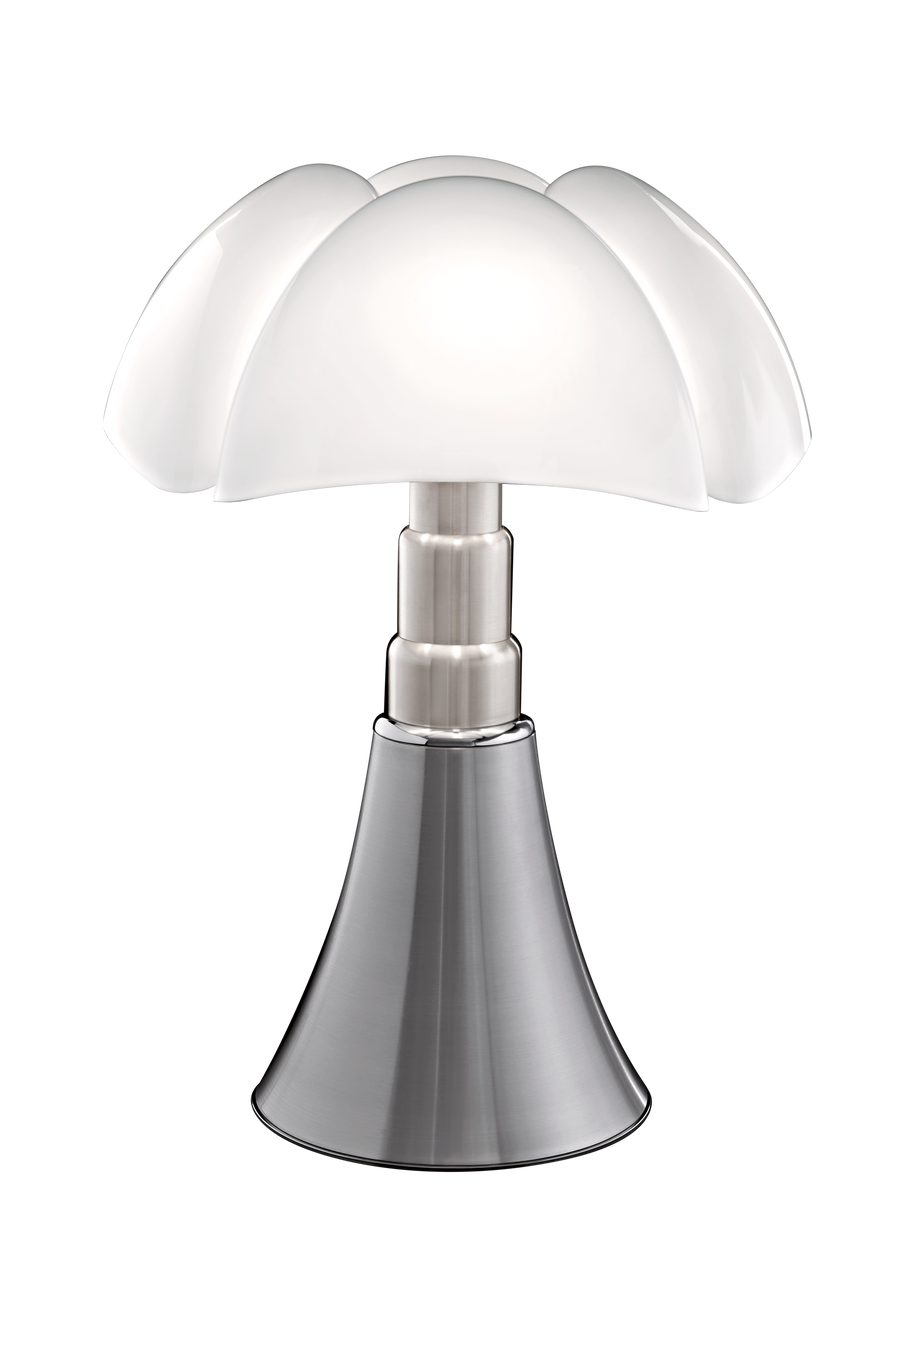 Pipistrello 620 Lampe de table / Lampadaire Martinelli Luce